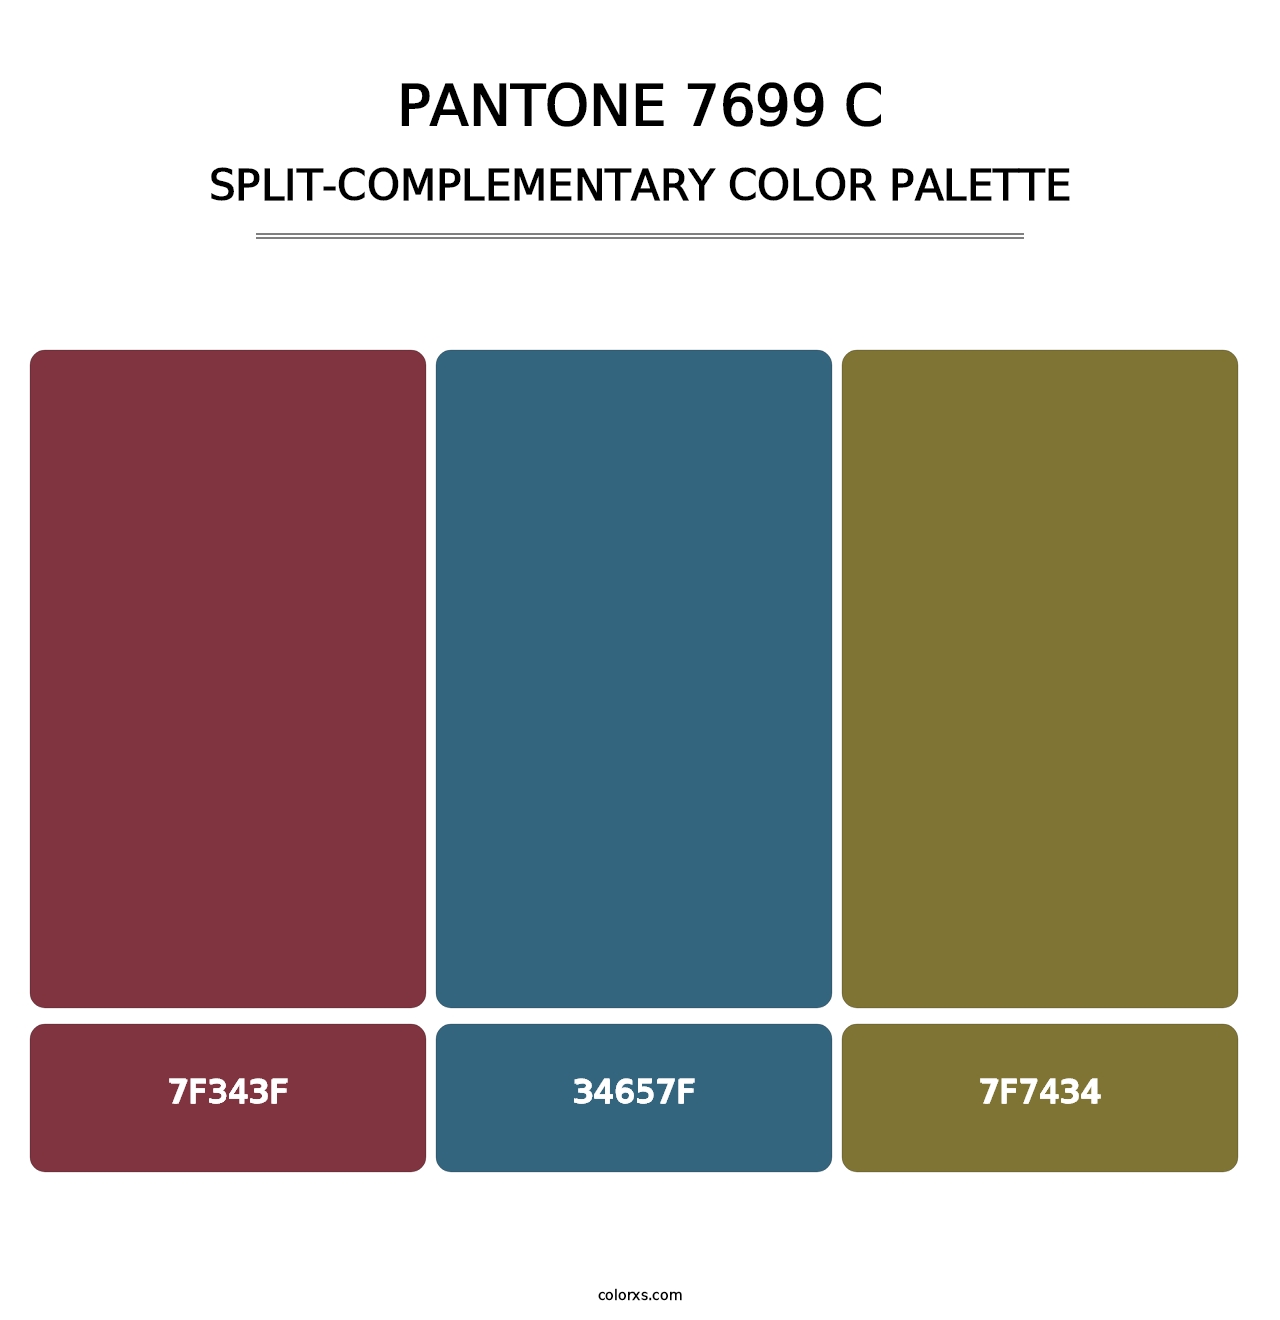 PANTONE 7699 C - Split-Complementary Color Palette